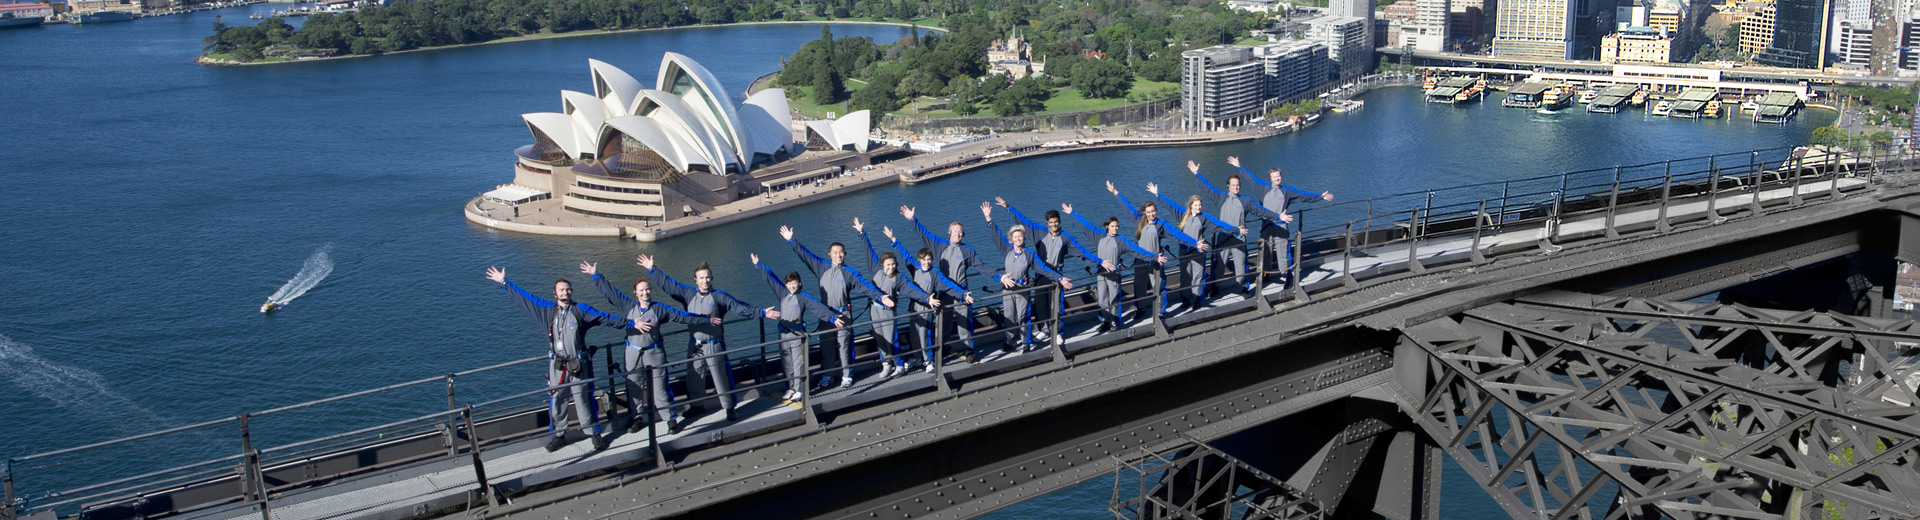 悉尼歌剧院 - 悉尼海港大桥